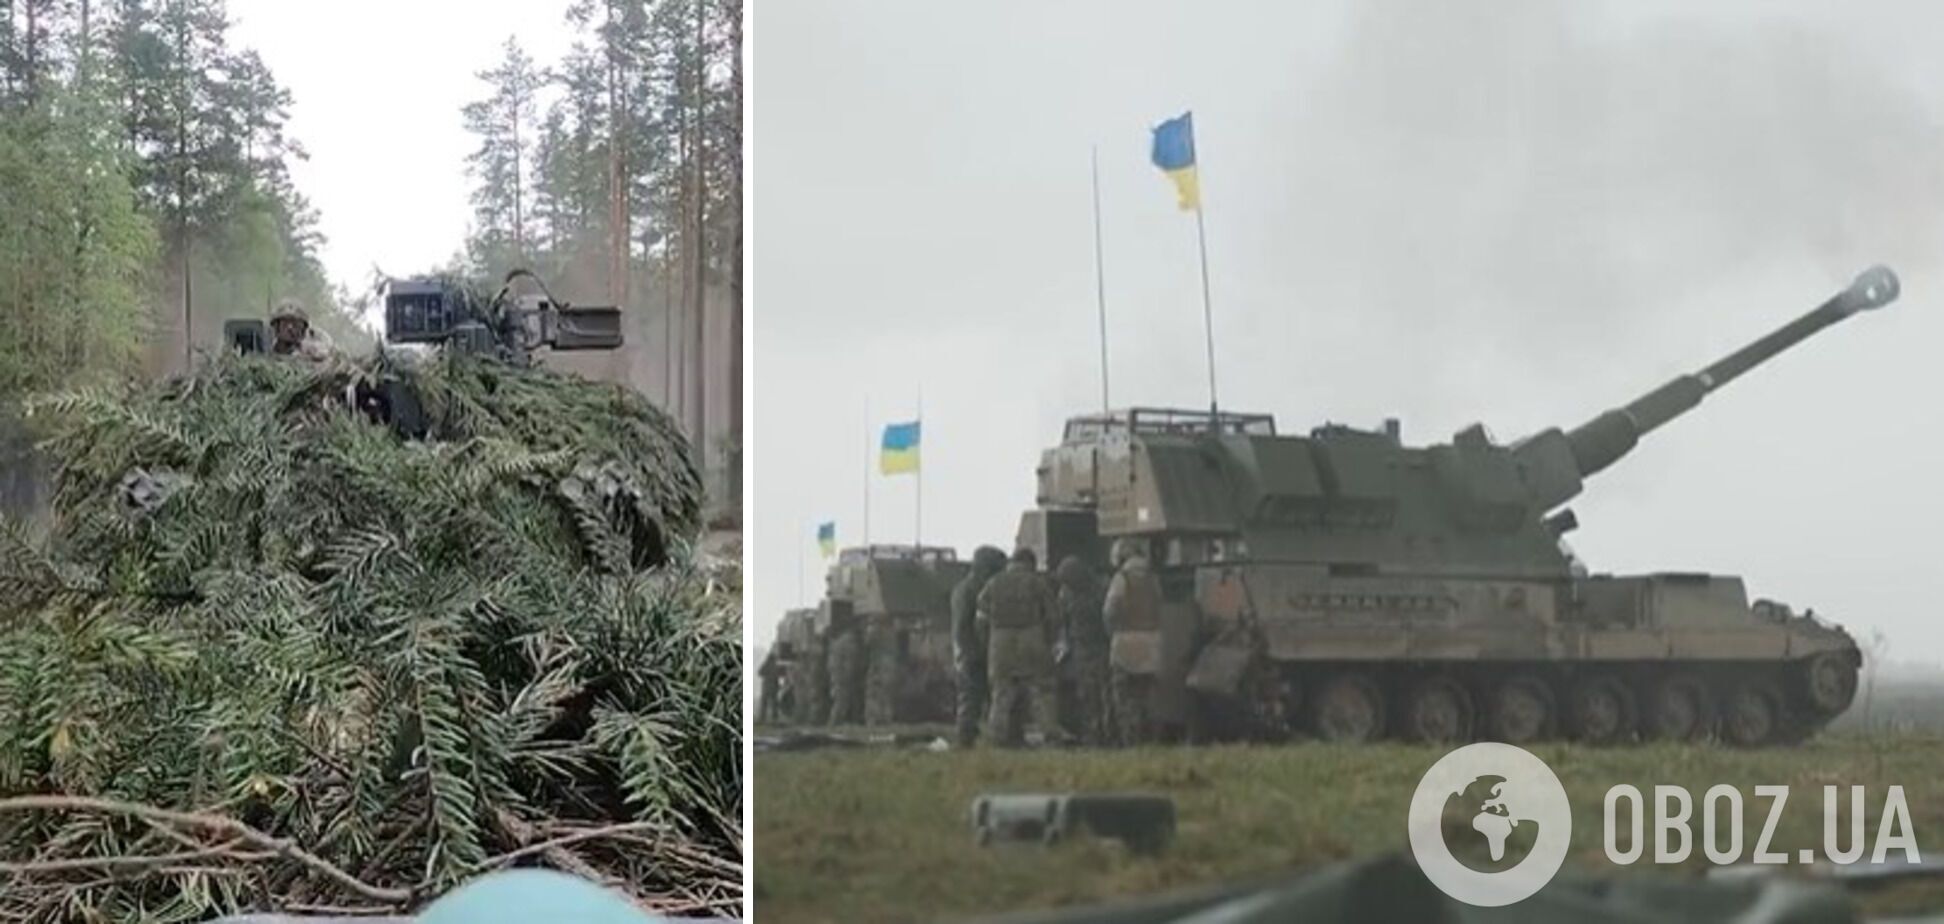 Украинские воины закончили обучение на САУ AS90 и танках Challenger 2: мощное видео